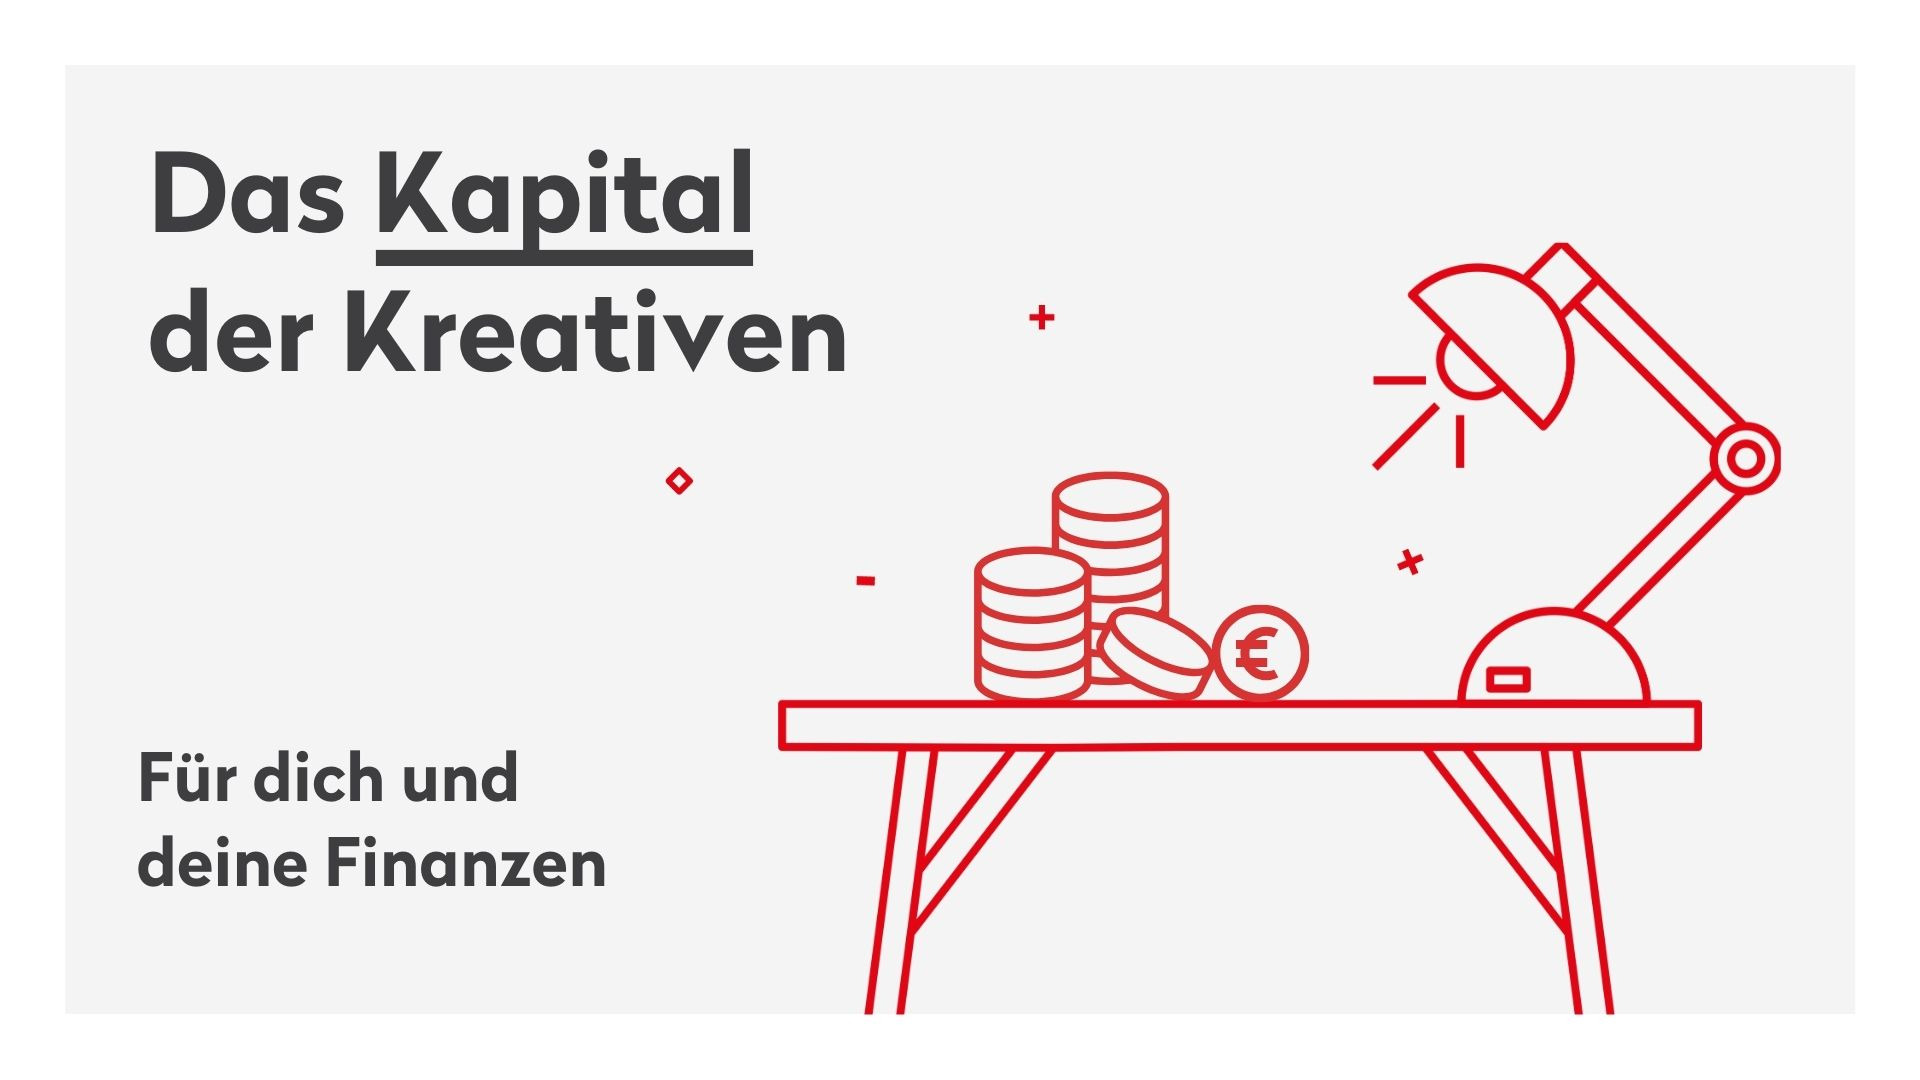 Coverfoto des Handbuches "Das Kapital der Kreativen - Für dich und deine Finanzen" der Kreativwirtschaft Austria 